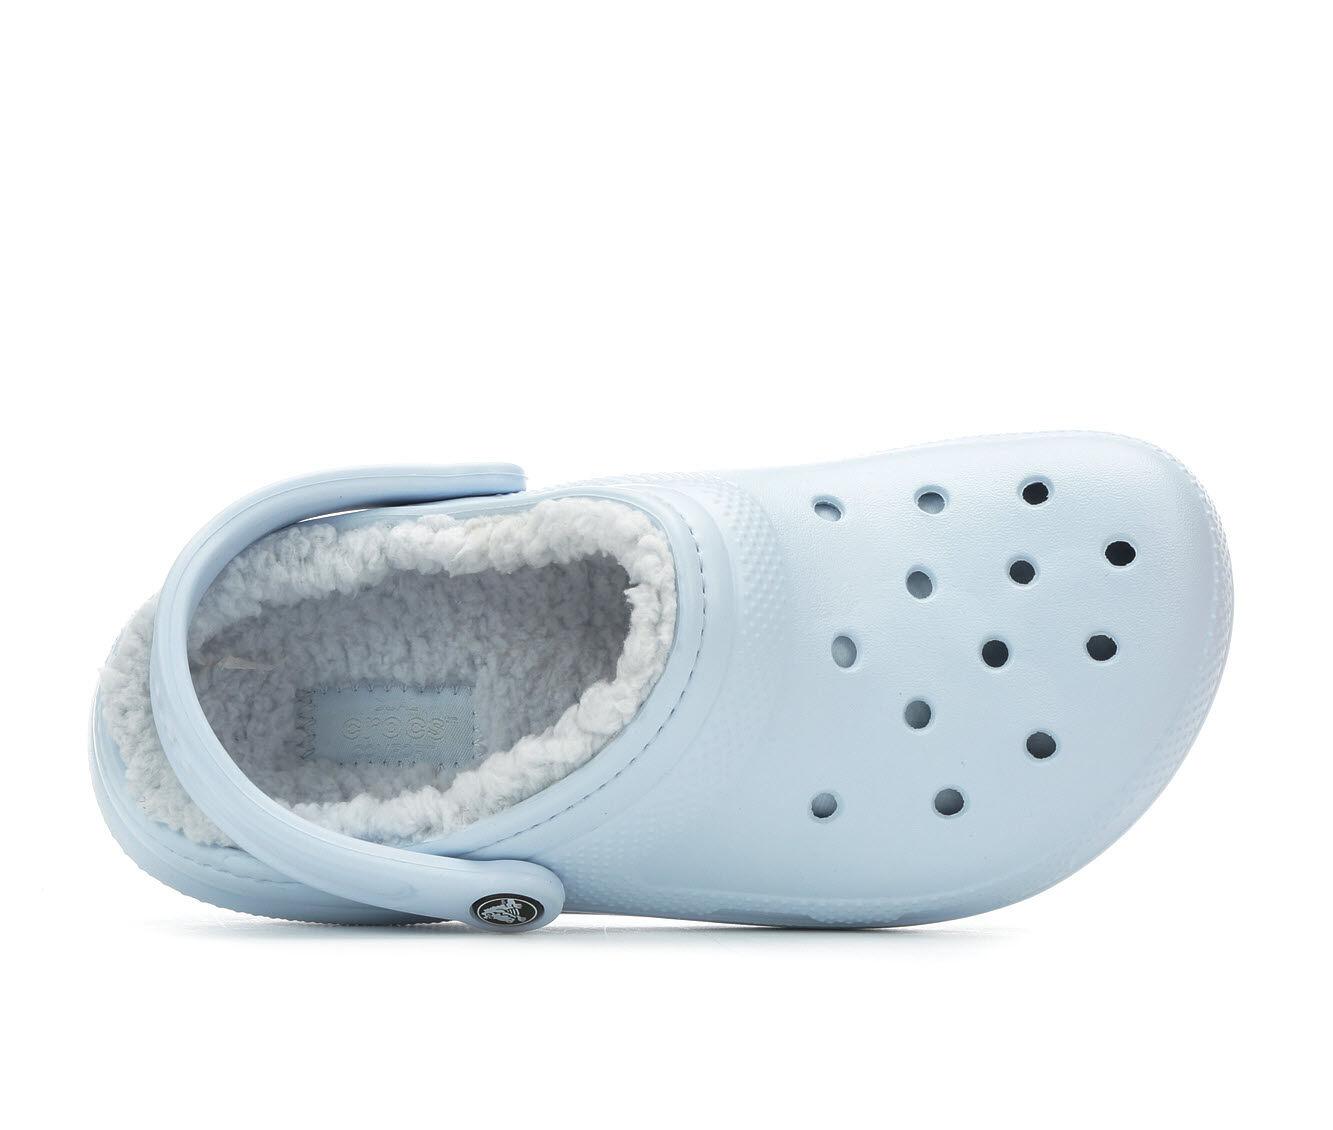 shoe carnival fuzzy crocs